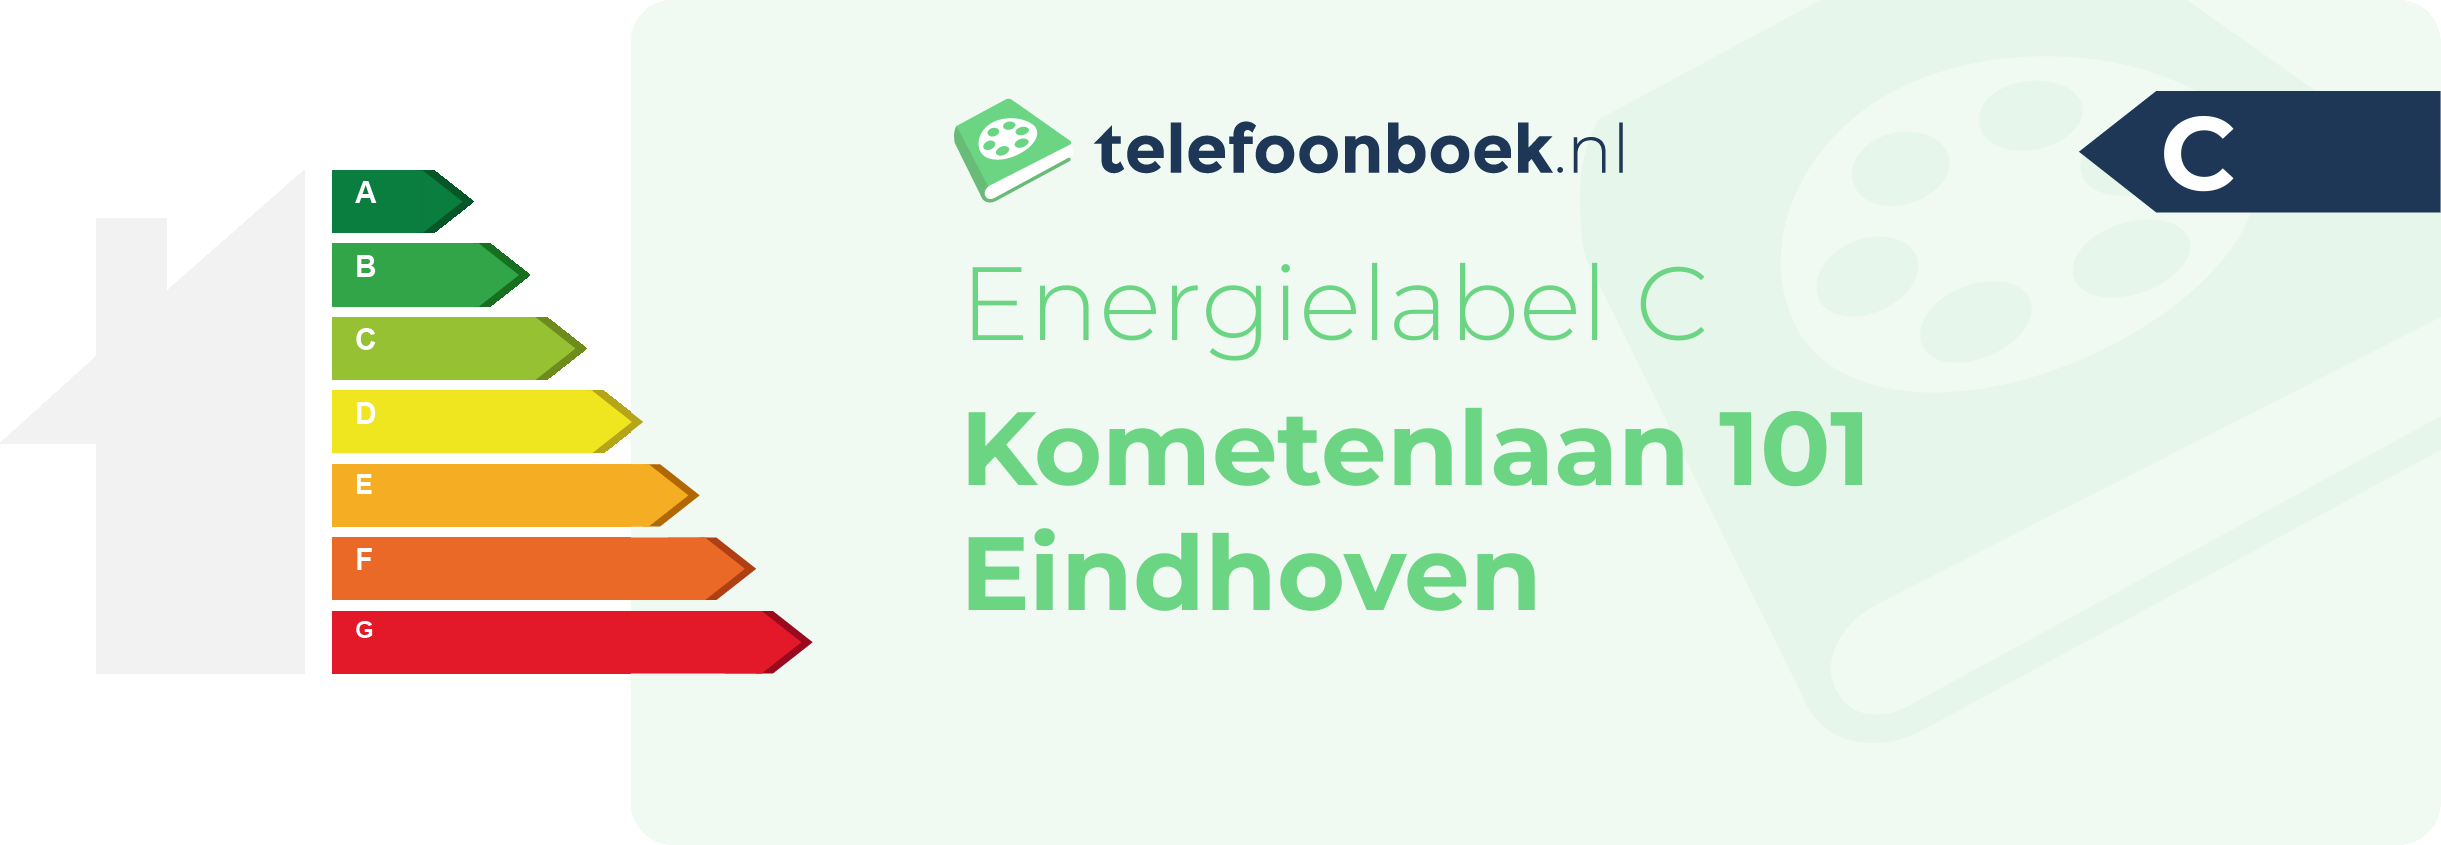 Energielabel Kometenlaan 101 Eindhoven